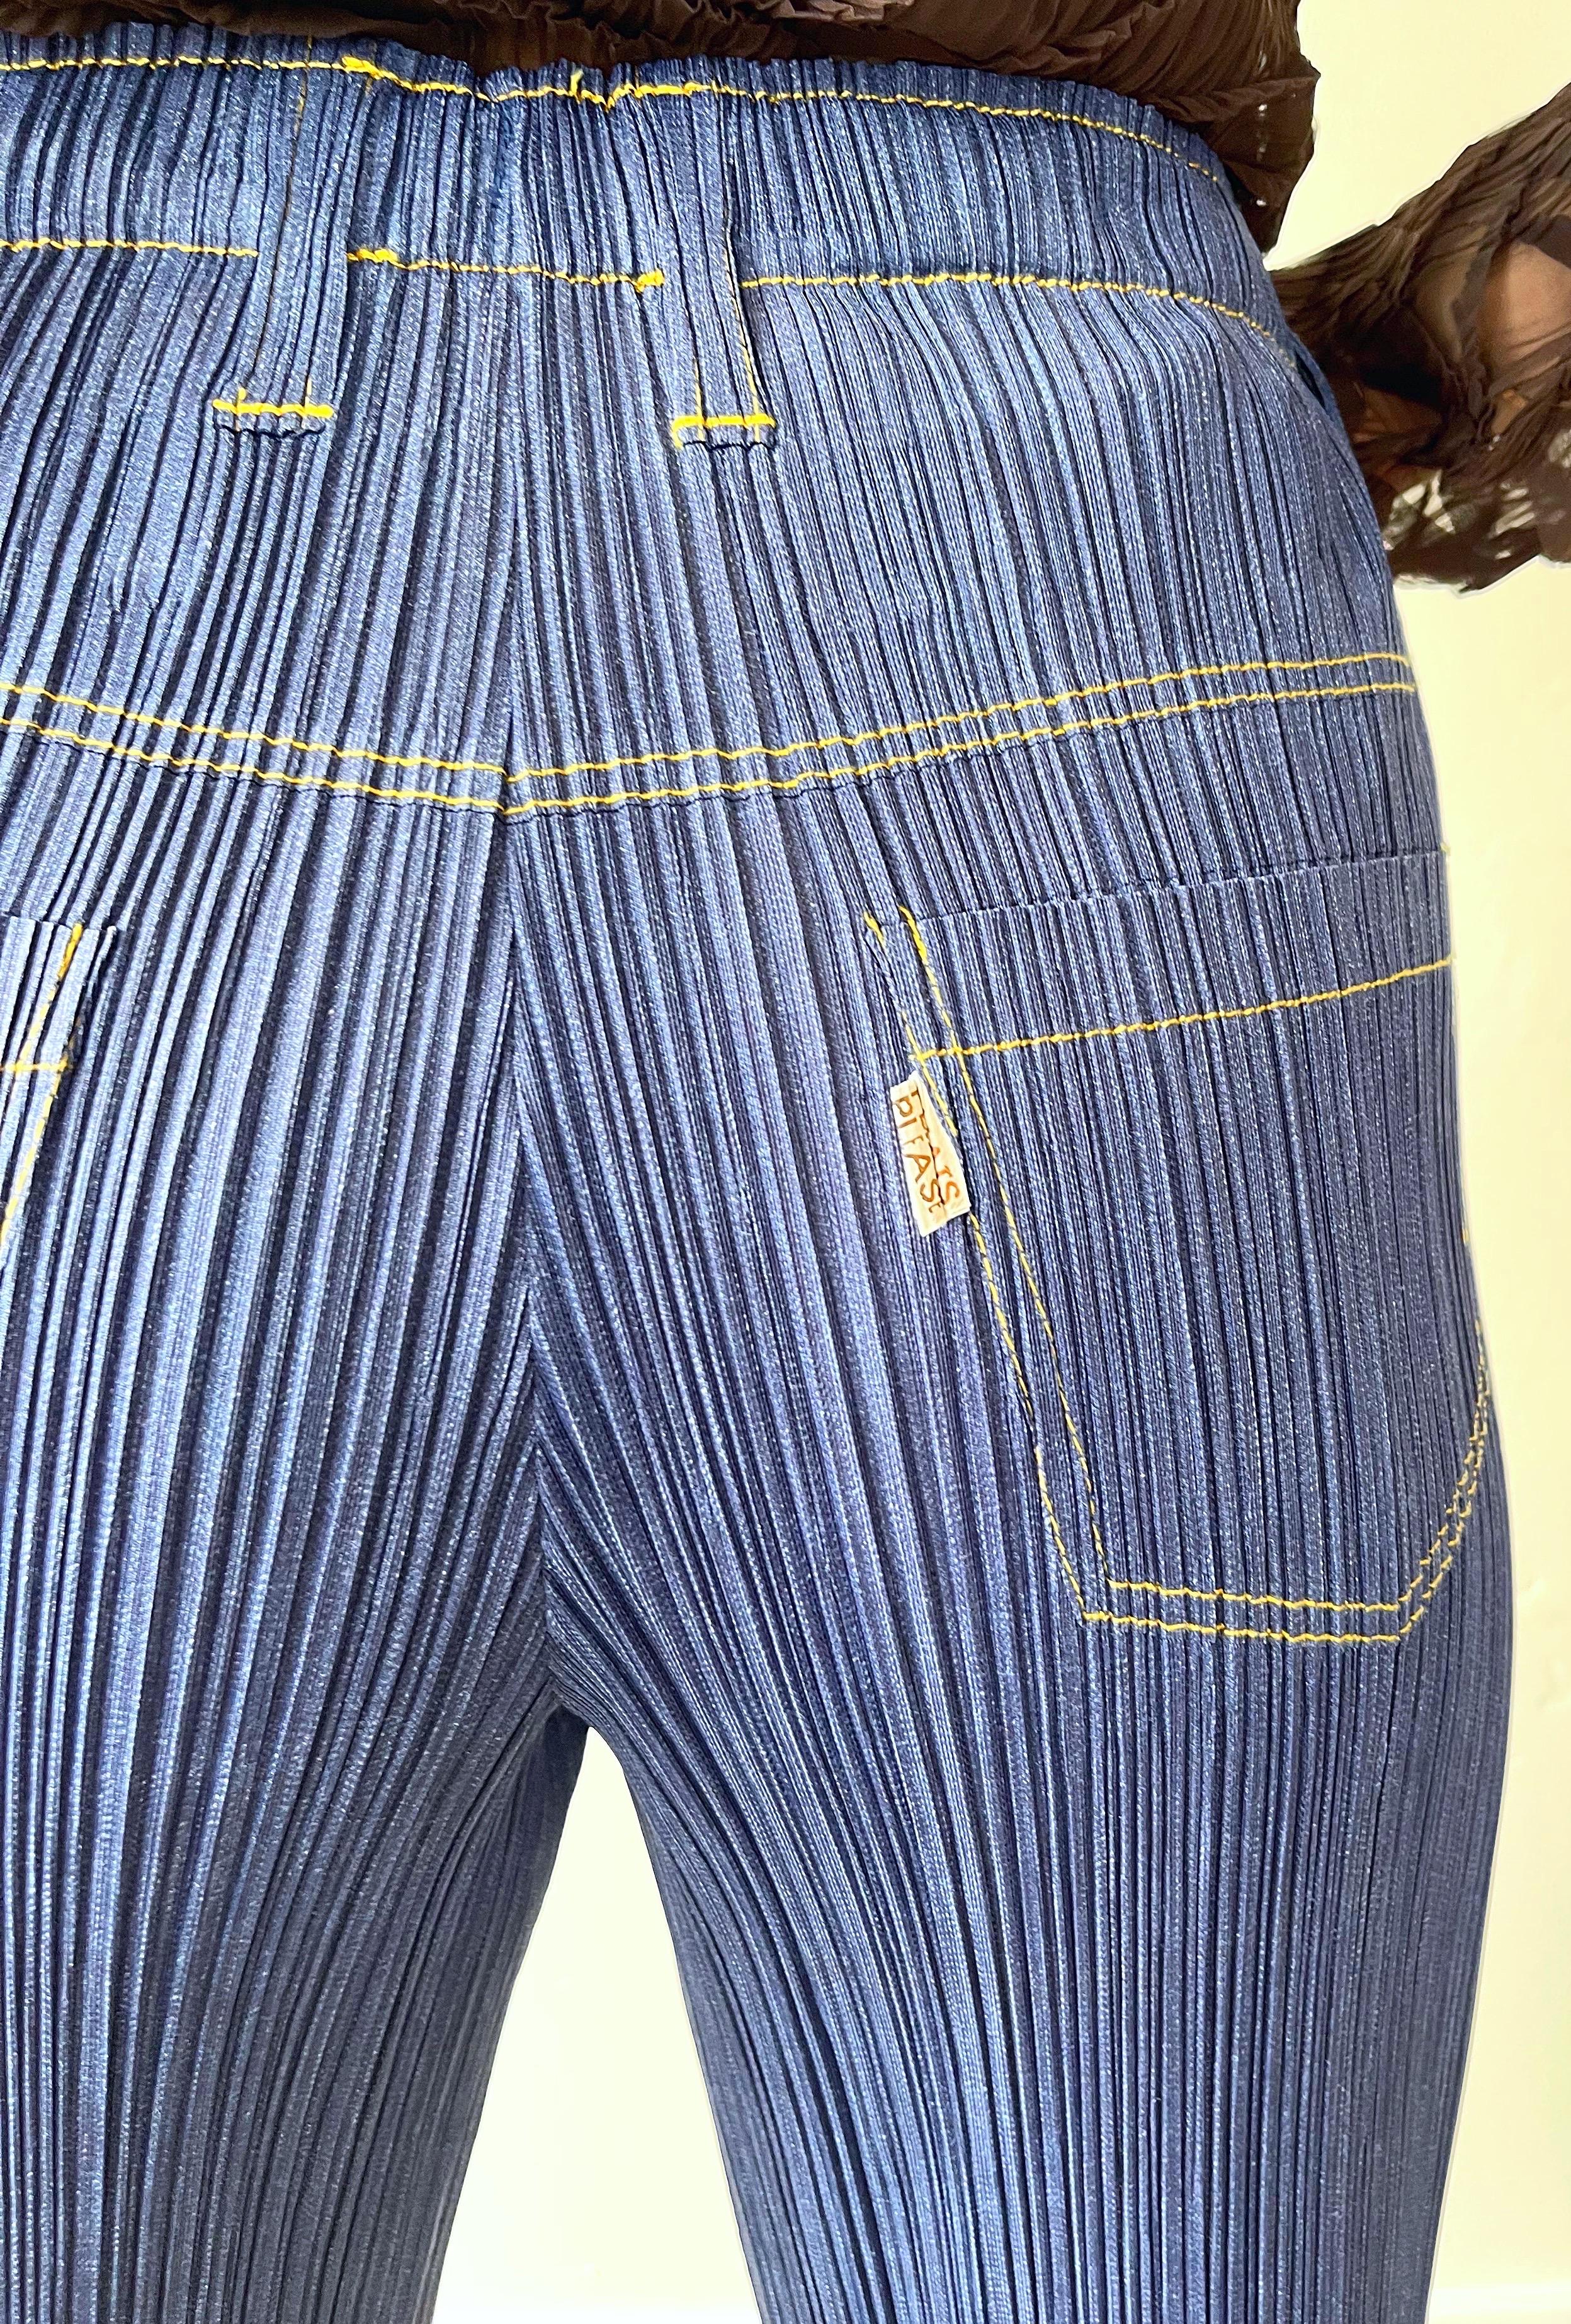 1990 Issey Miyake Pleats Please Trompe L'oeil Denim Blue Jeans Vintage Pants en vente 8